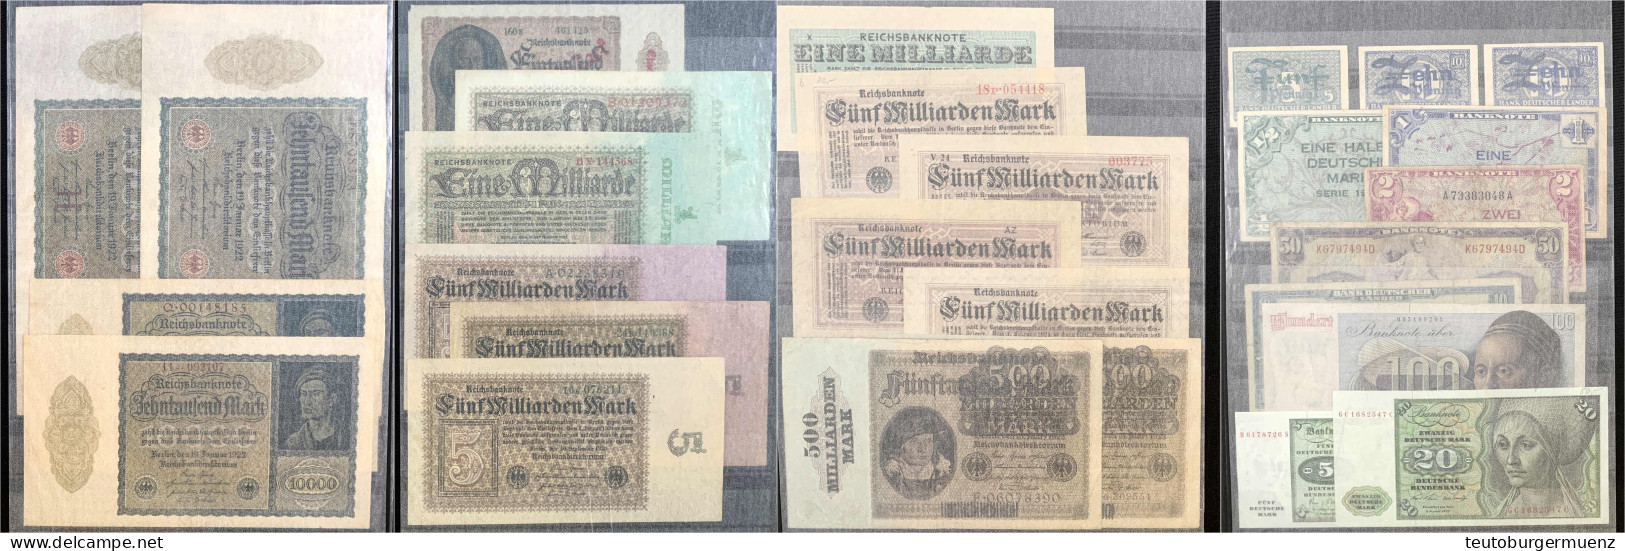 Sammlung Mit Ca. 300 Scheinen Im Album, überwiegend Reichsbanknoten Beginnend Mit 100 Mark 1898, Aber Auch Alliierte Mil - Sammlungen